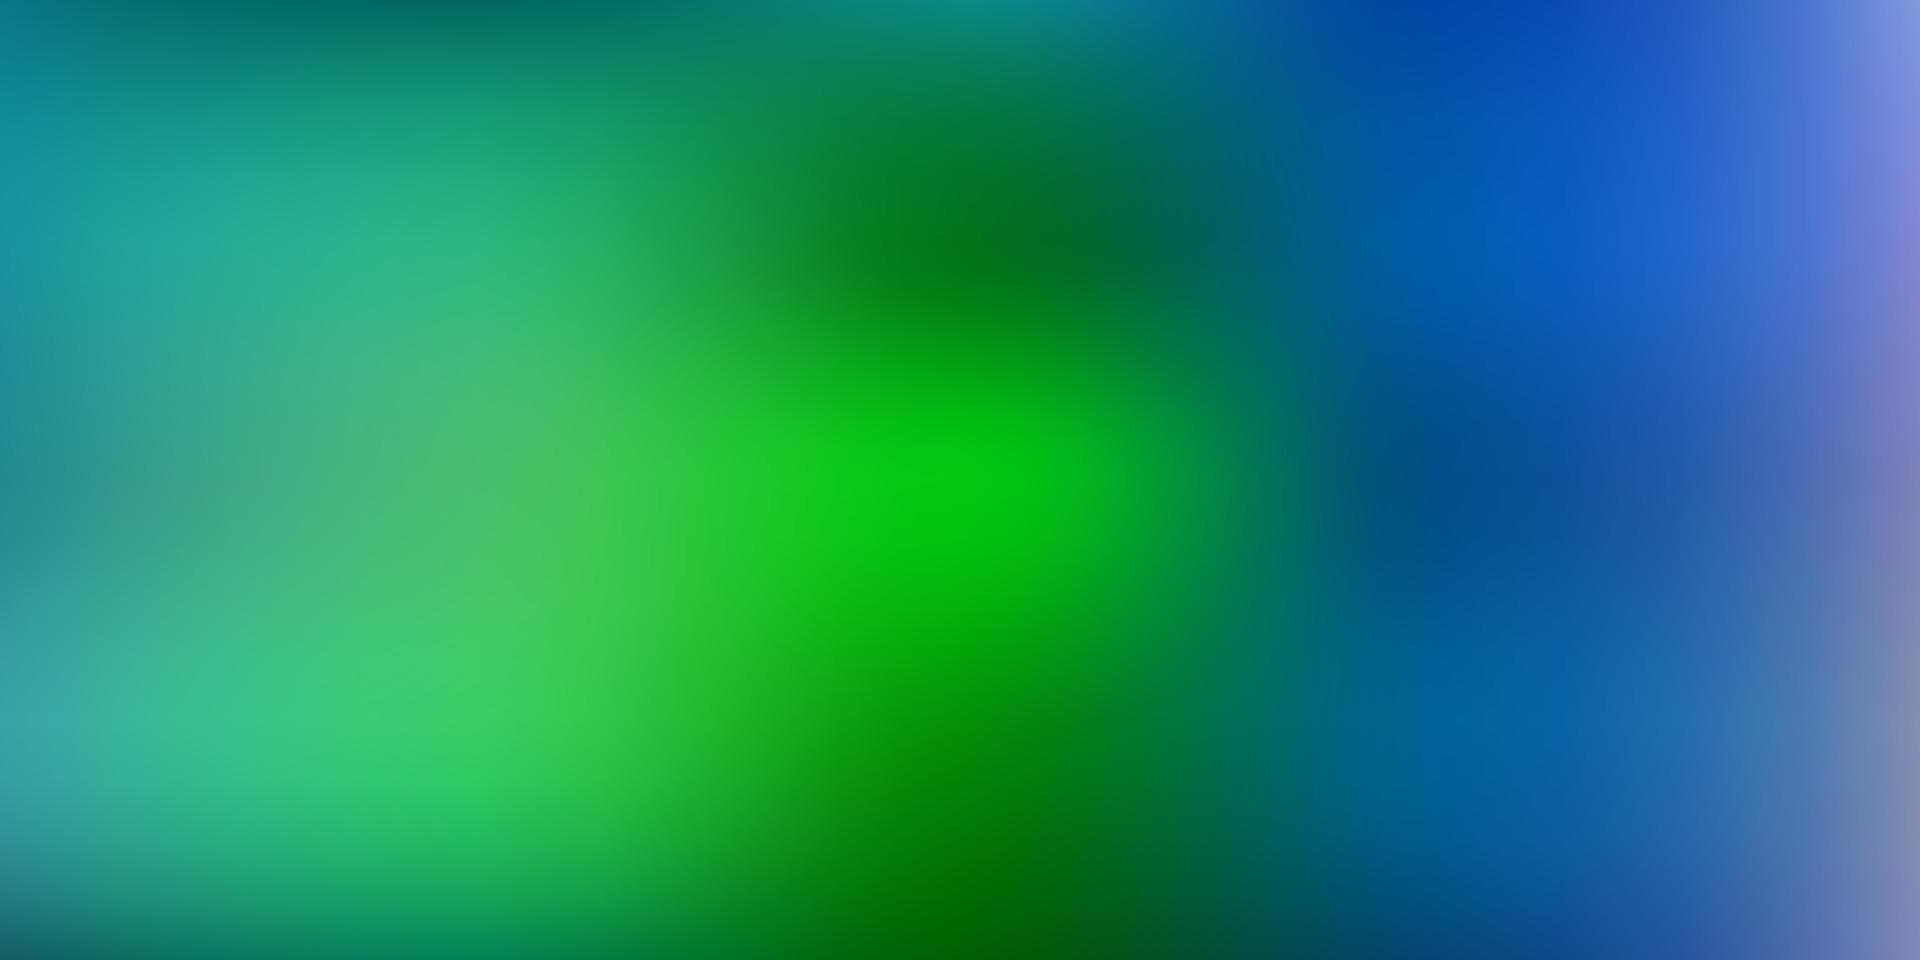 ljusblå, grön vektor gradient oskärpa layout.